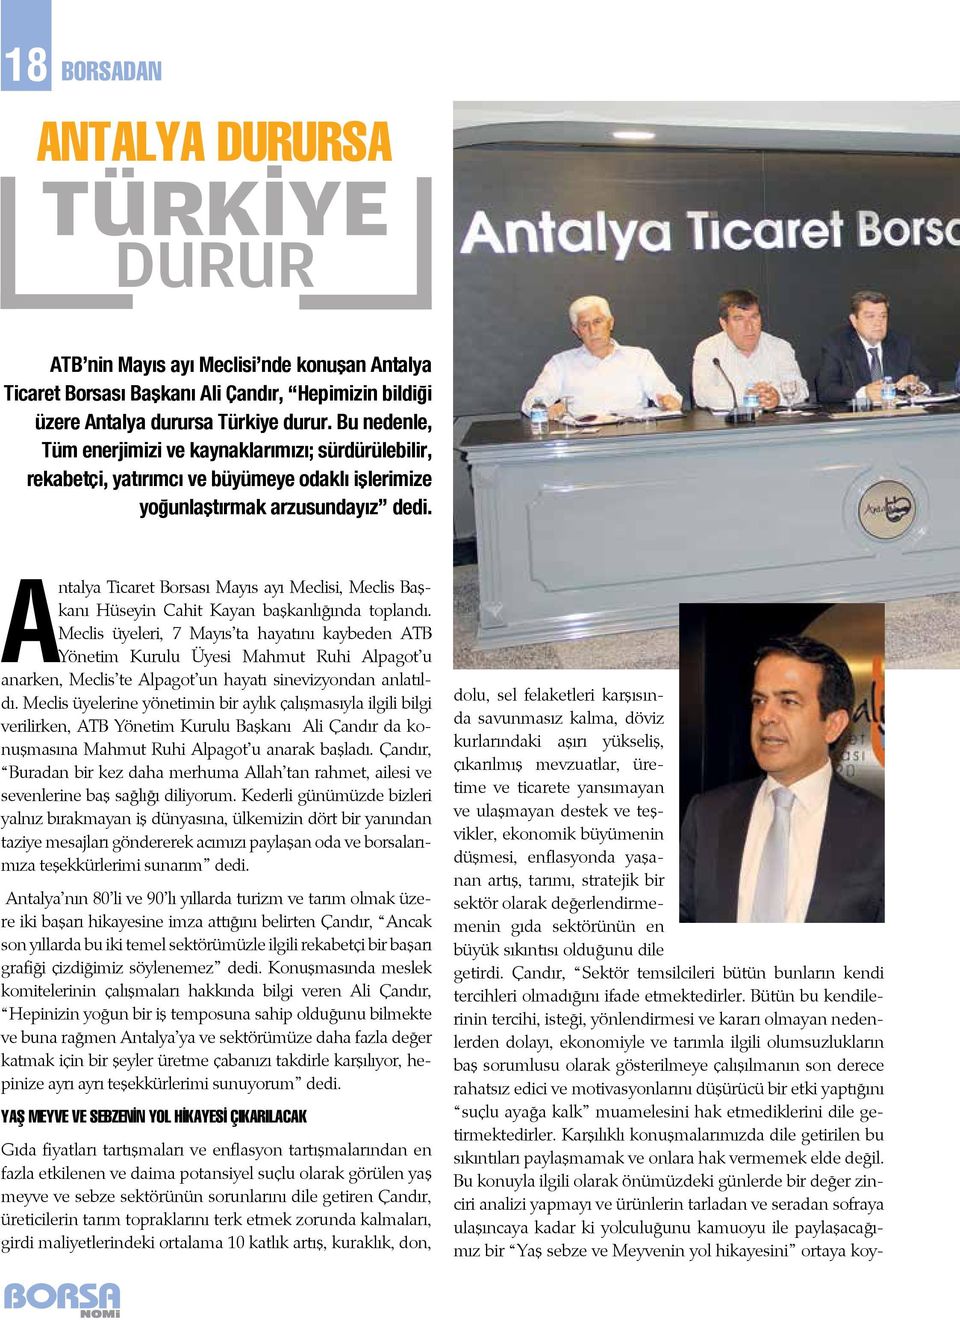 Antalya Ticaret Borsası Mayıs ayı Meclisi, Meclis Başkanı Hüseyin Cahit Kayan başkanlığında toplandı.